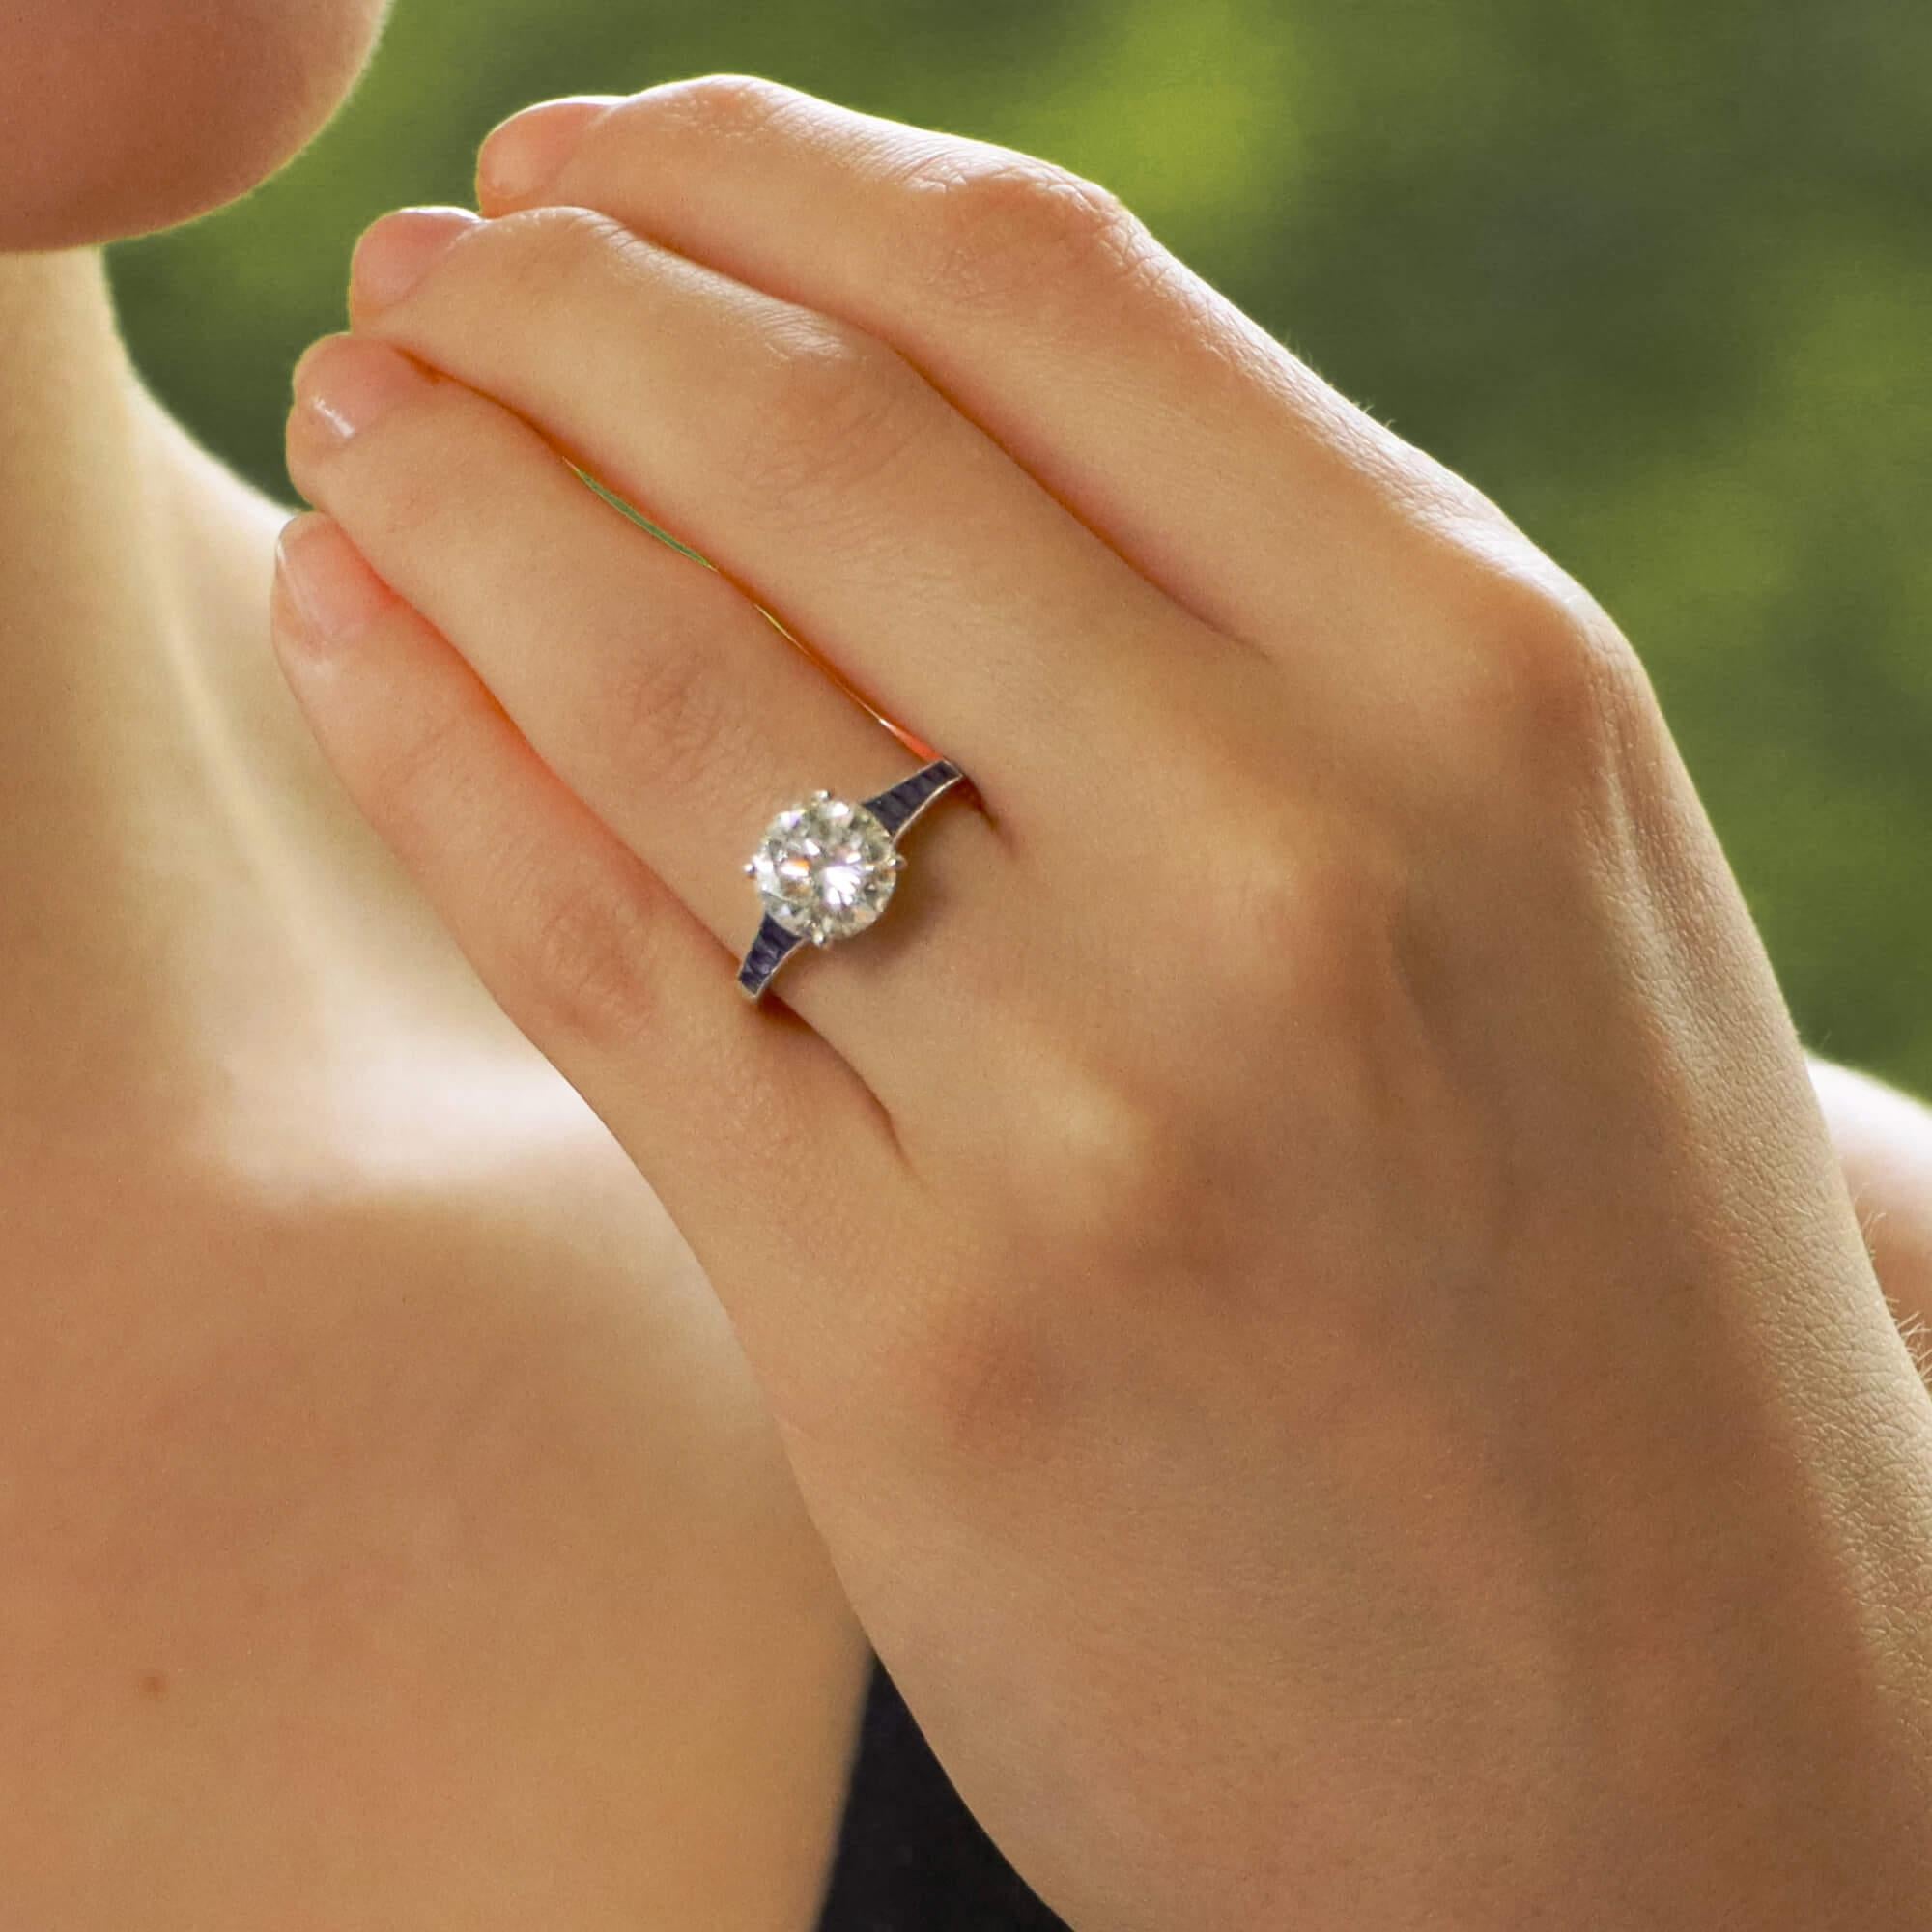 Ein wirklich schöner, vom Art Deco inspirierter Verlobungsring mit Diamanten und Saphiren, gefasst in Platin.

Der Ring ist mit einem funkelnden zertifizierten runden Diamanten im Brillantschliff besetzt, der mit vier Krallen in die Mitte gesetzt